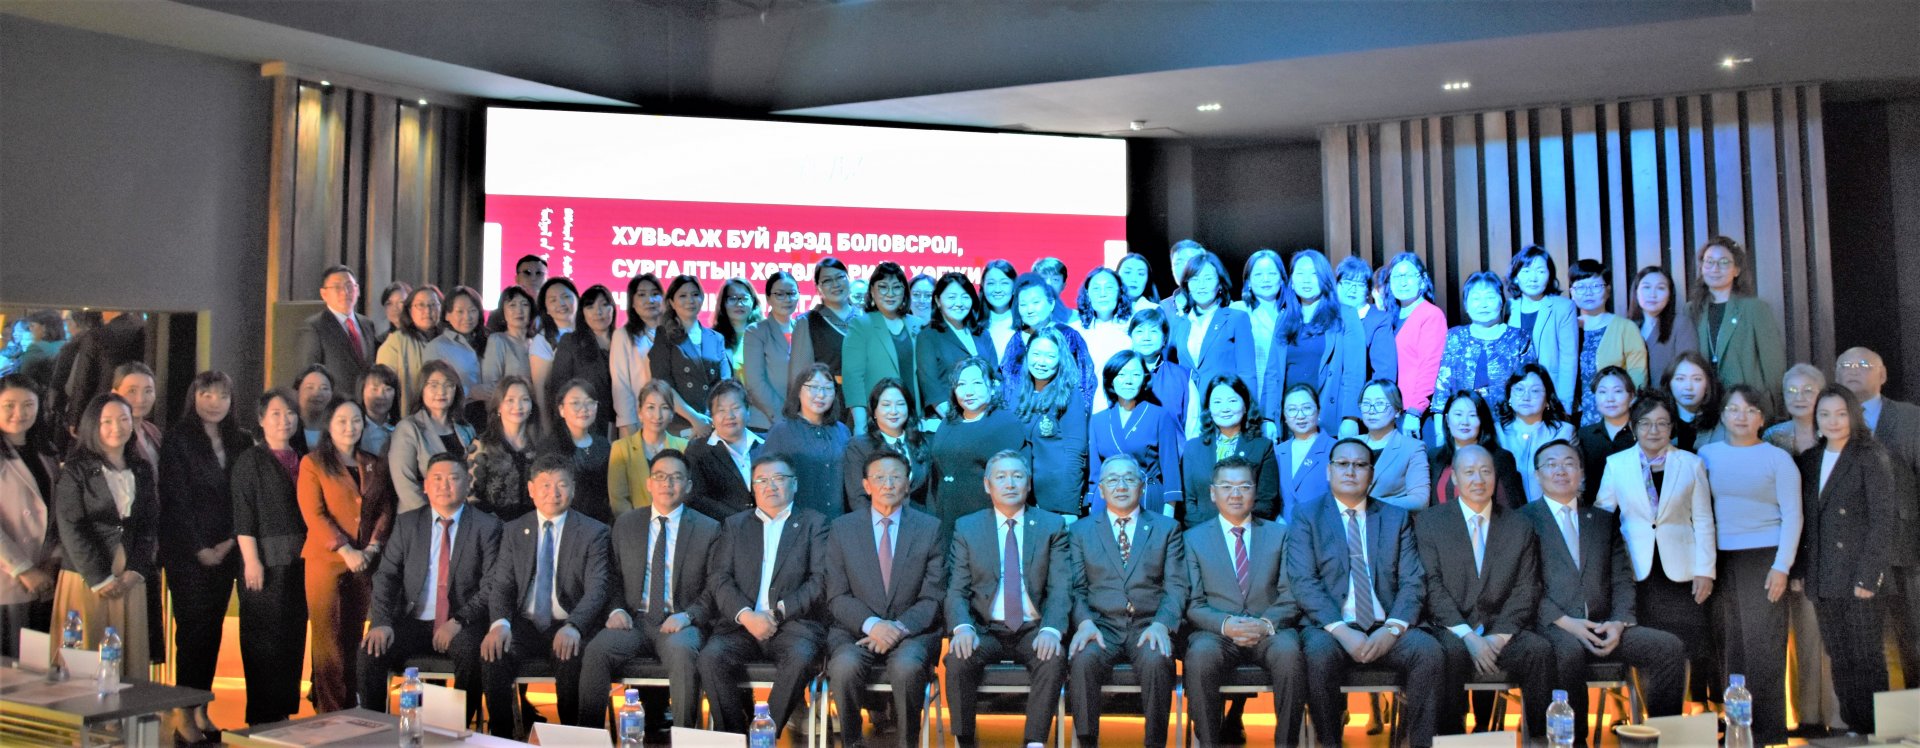 Монголын Анагаах Ухааны Боловсролын Холбооны ээлжит X хурал амжилттай зохион байгуулагдлаа